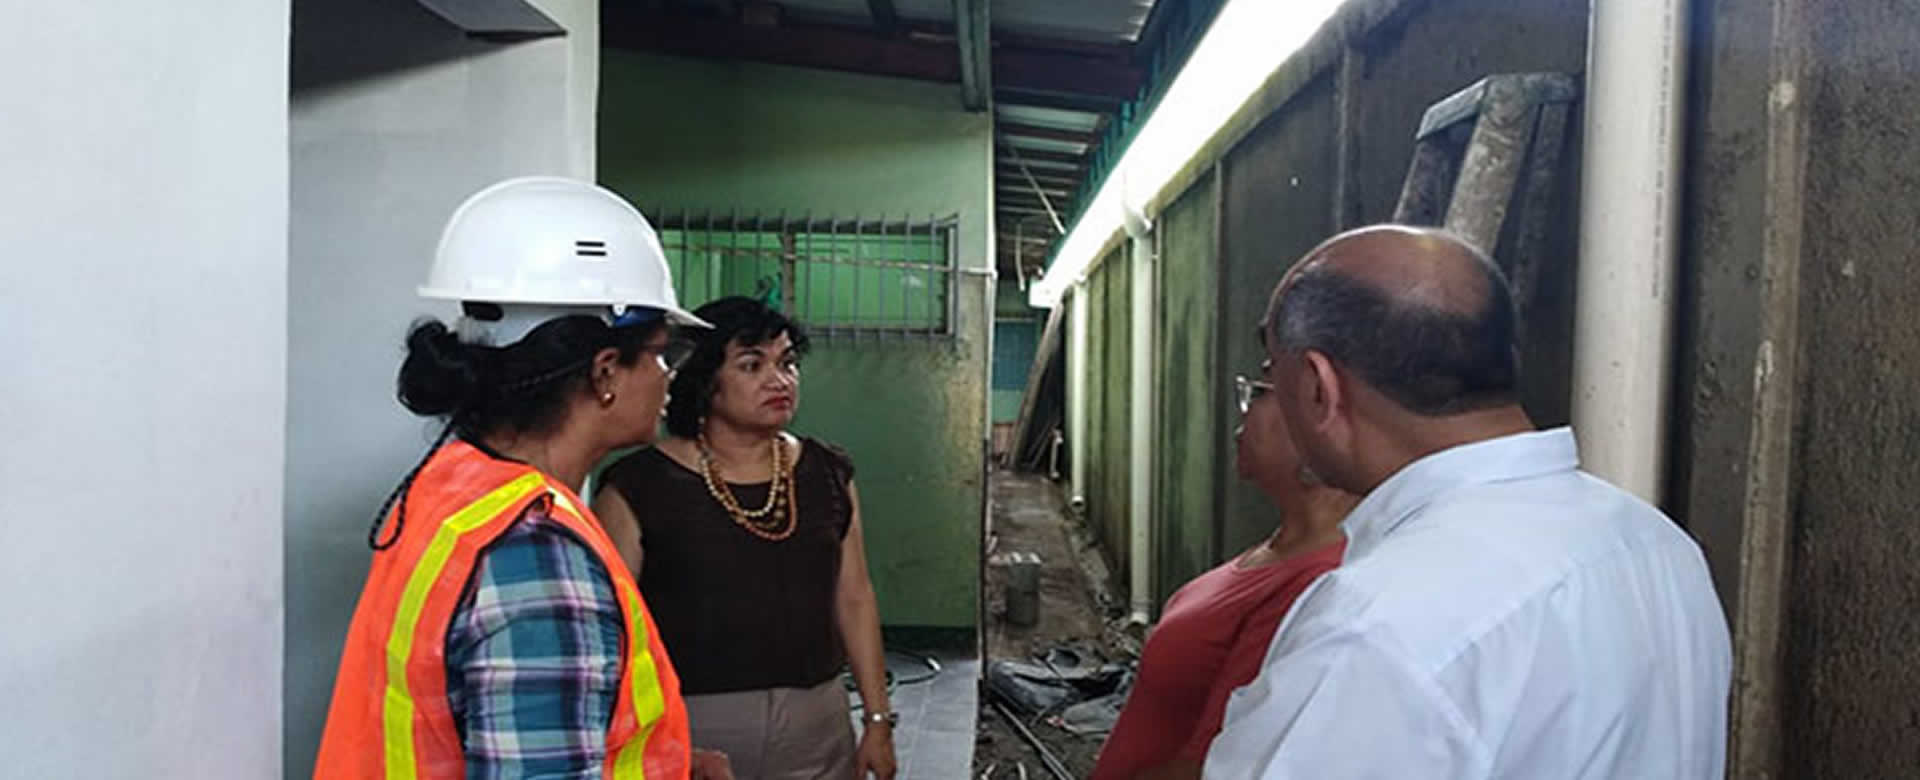 Avanza con éxito la remodelación del Centro de Salud de Monimbó